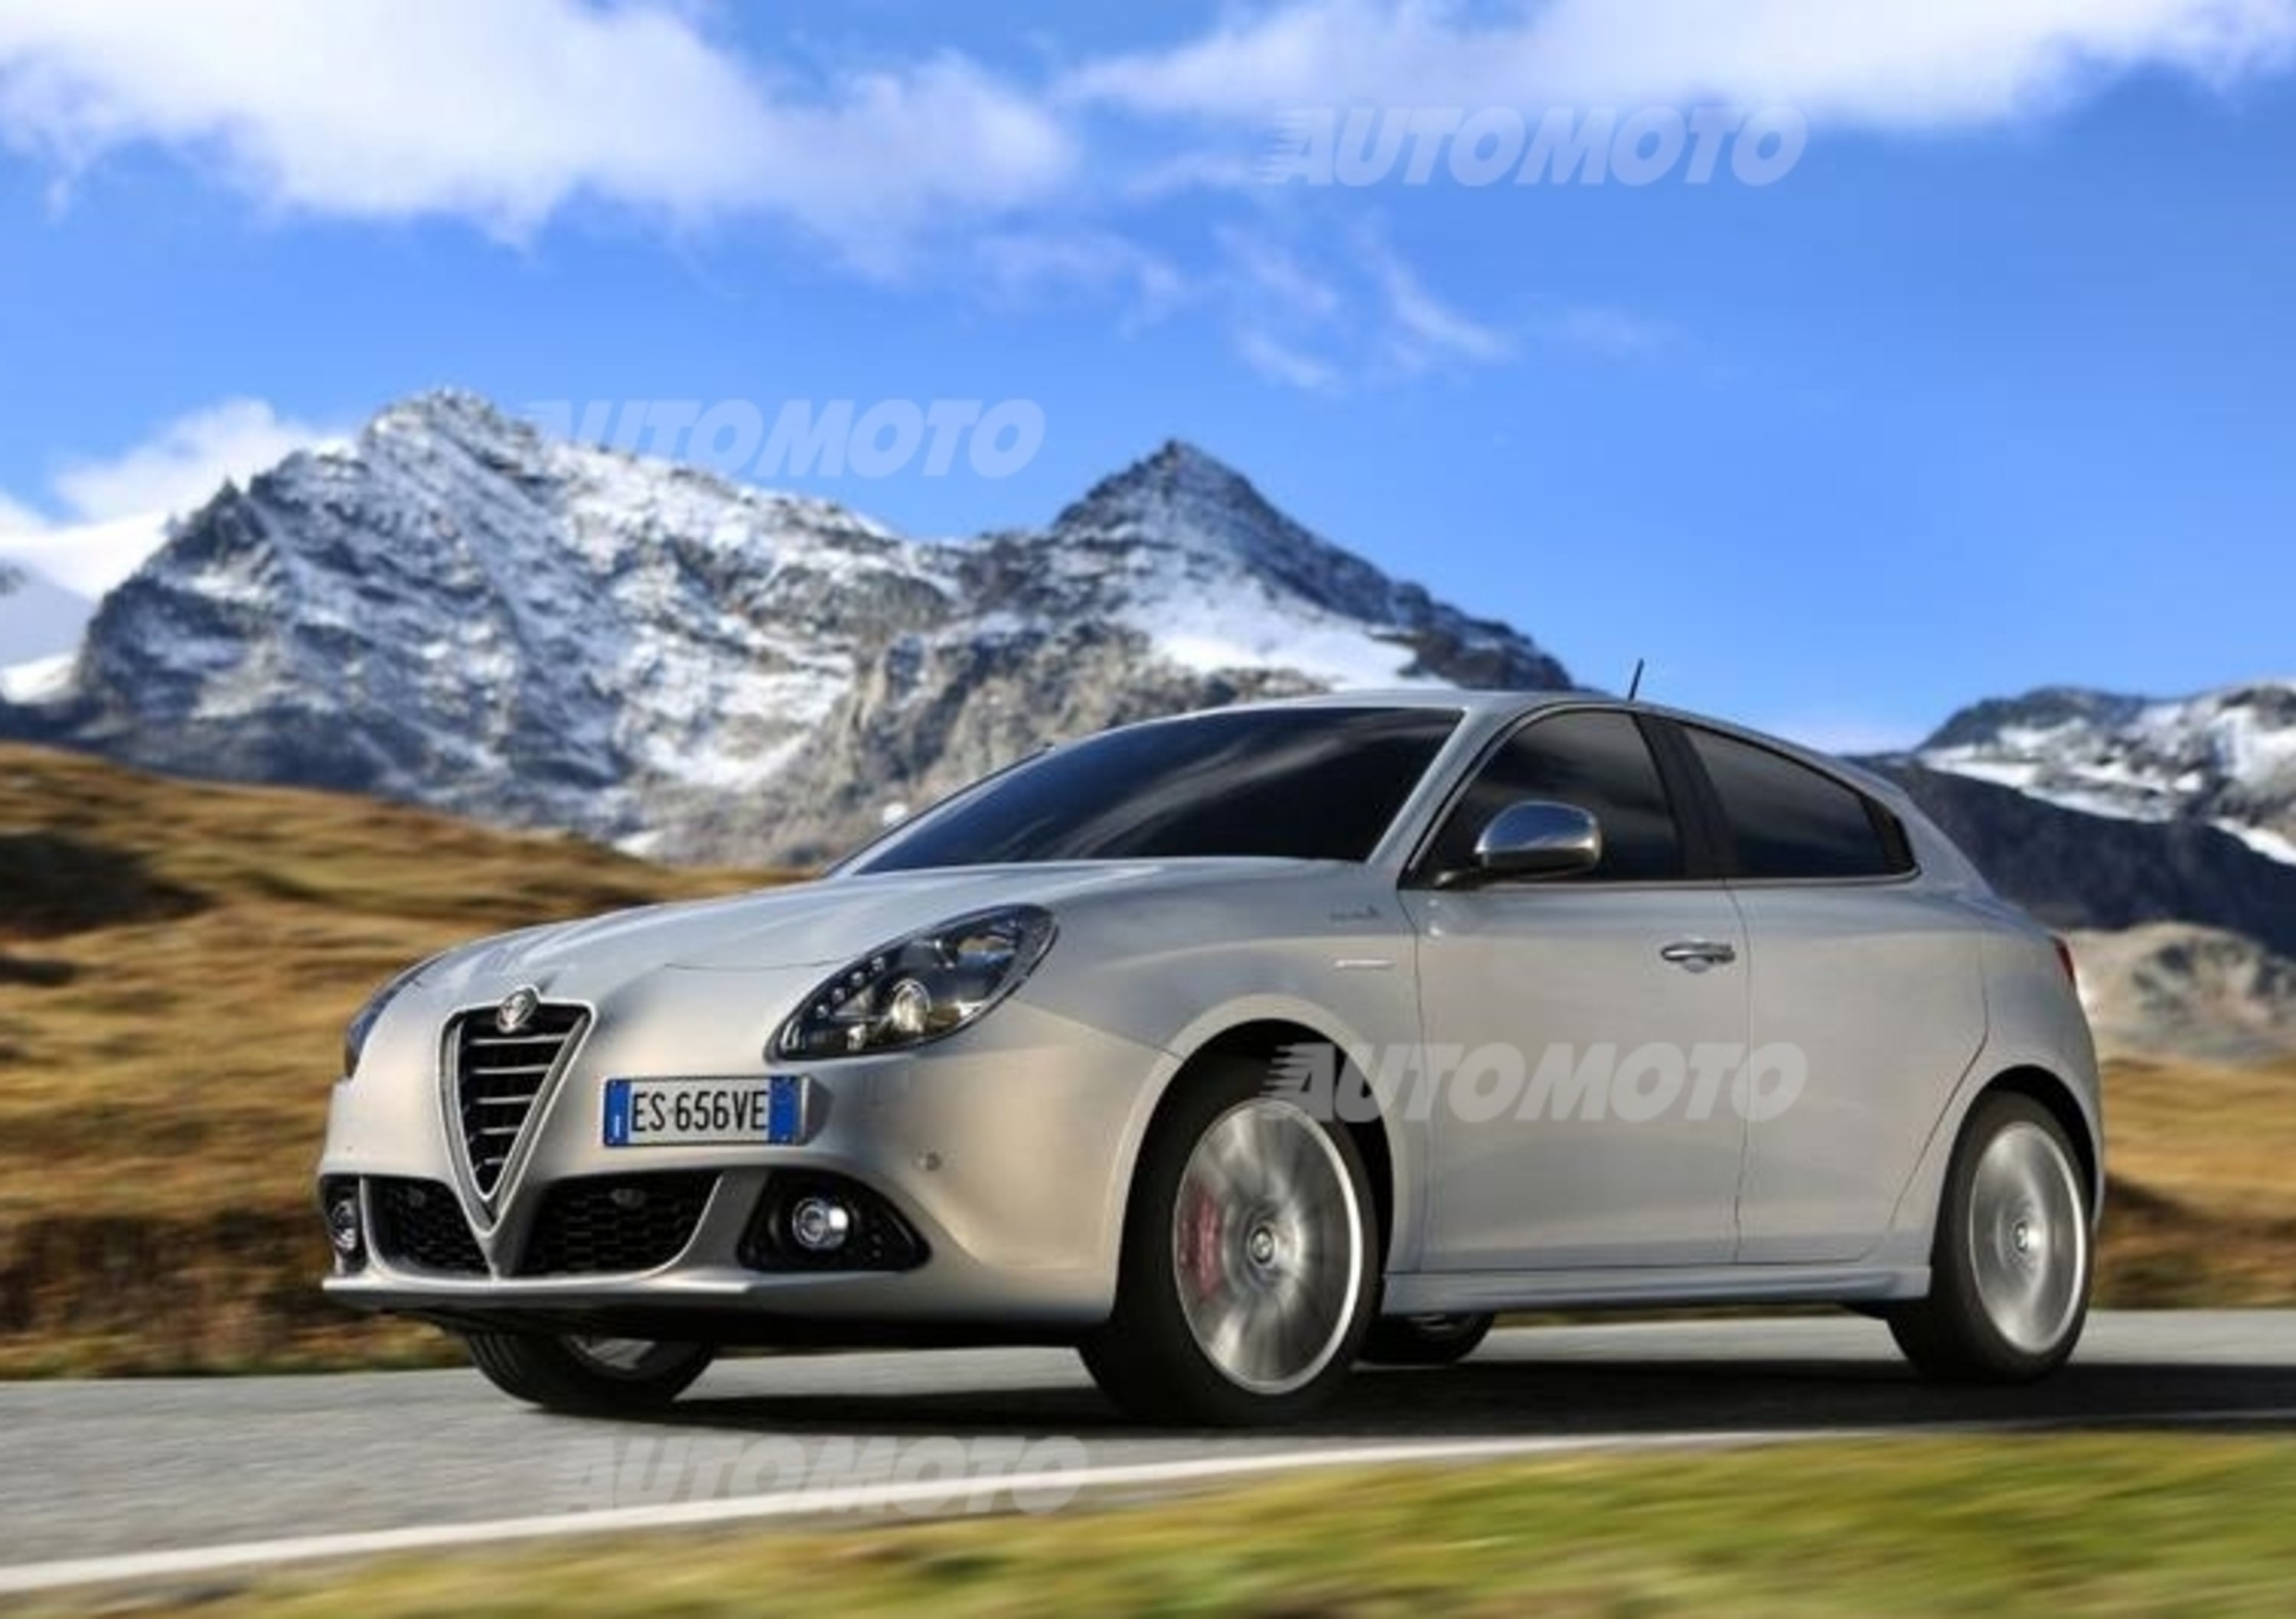 Alfa Romeo Giulietta 2014: tutti i dettagli e le immagini del restyling